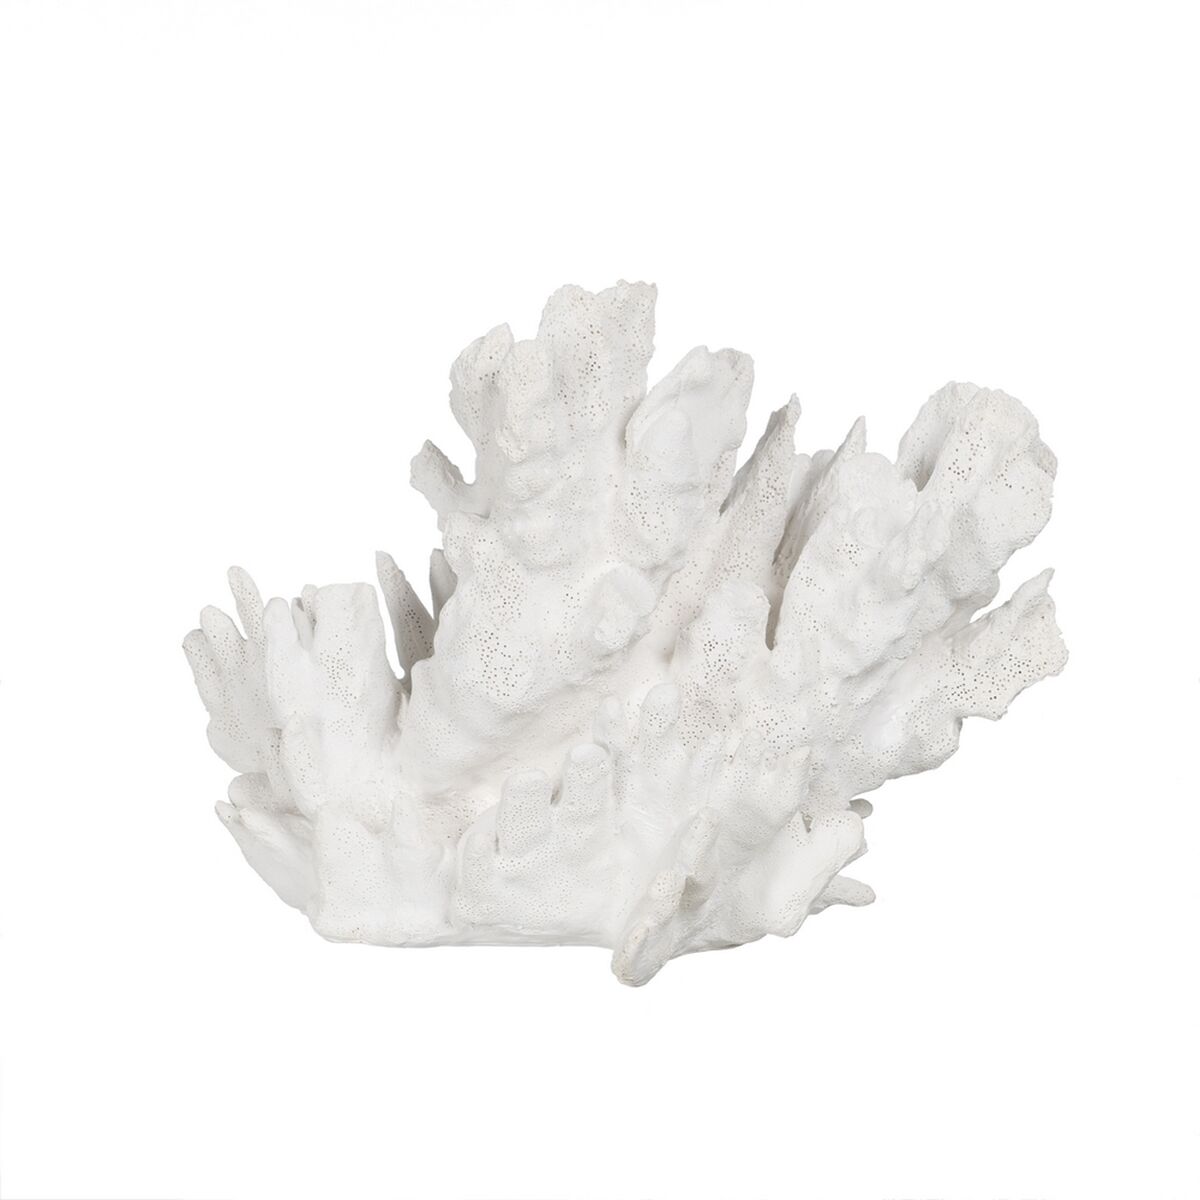 Figurine Décorative Blanc Corail 29 x 20 x 21 cm